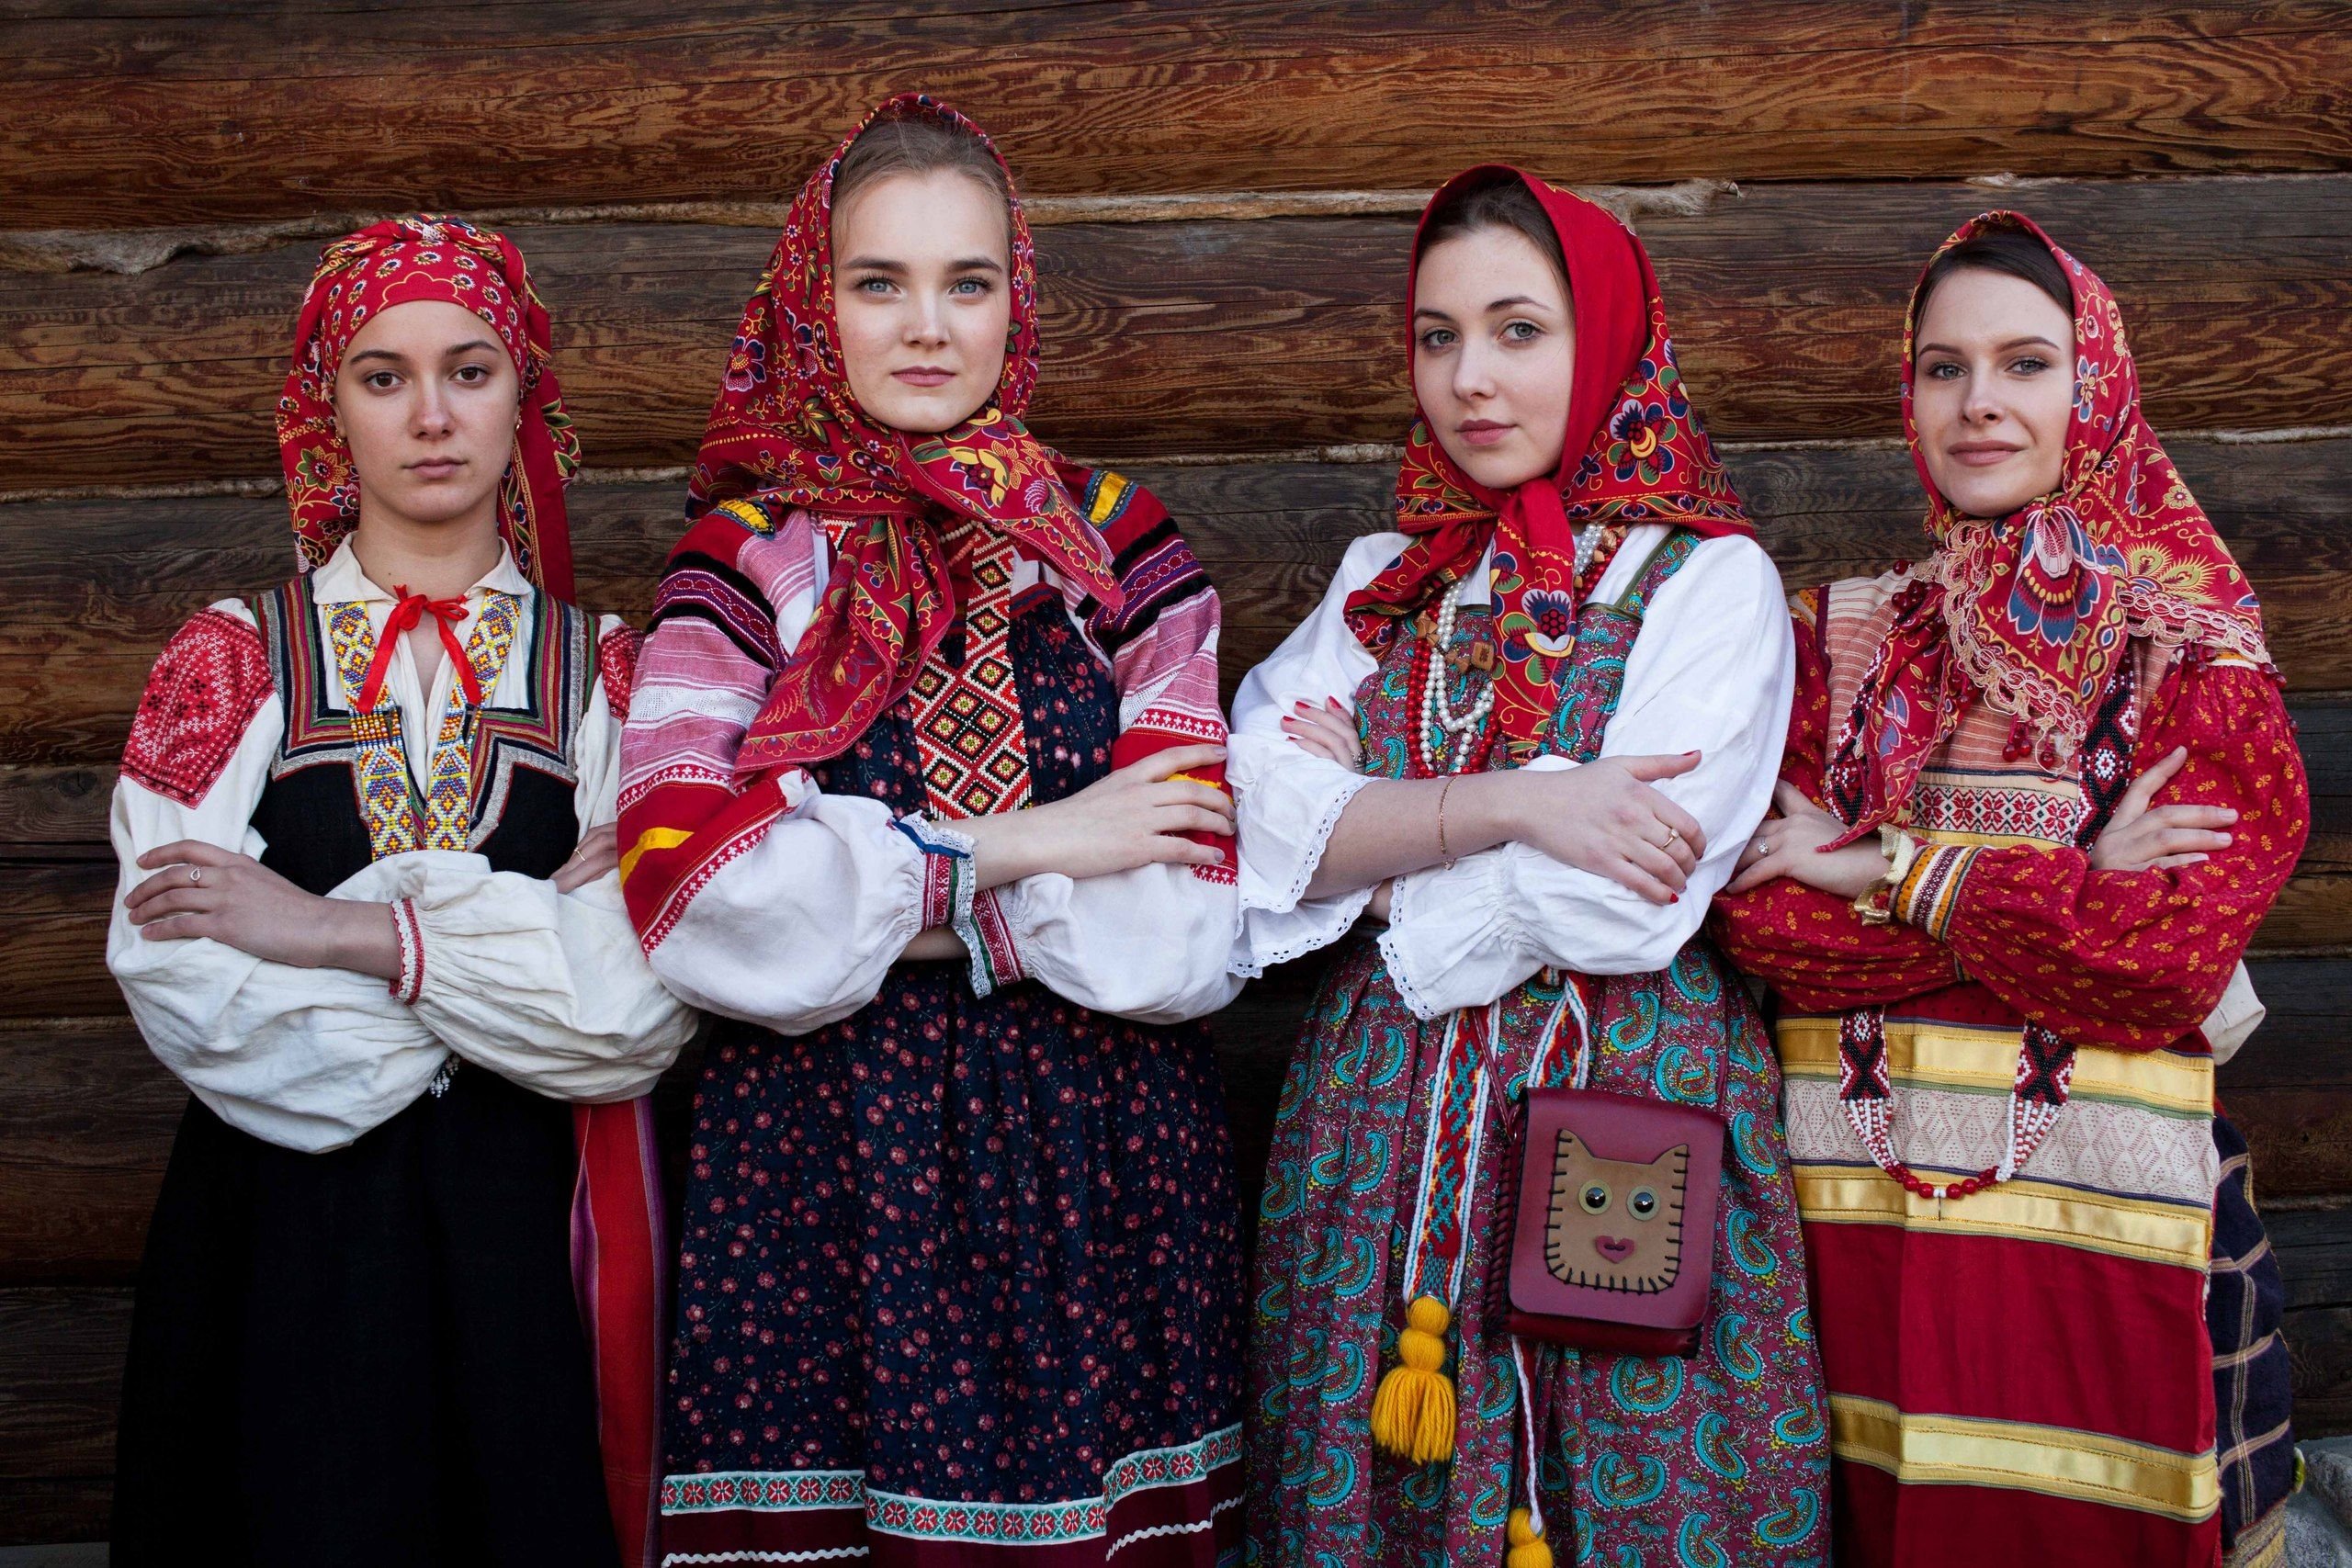 Народы орловской области